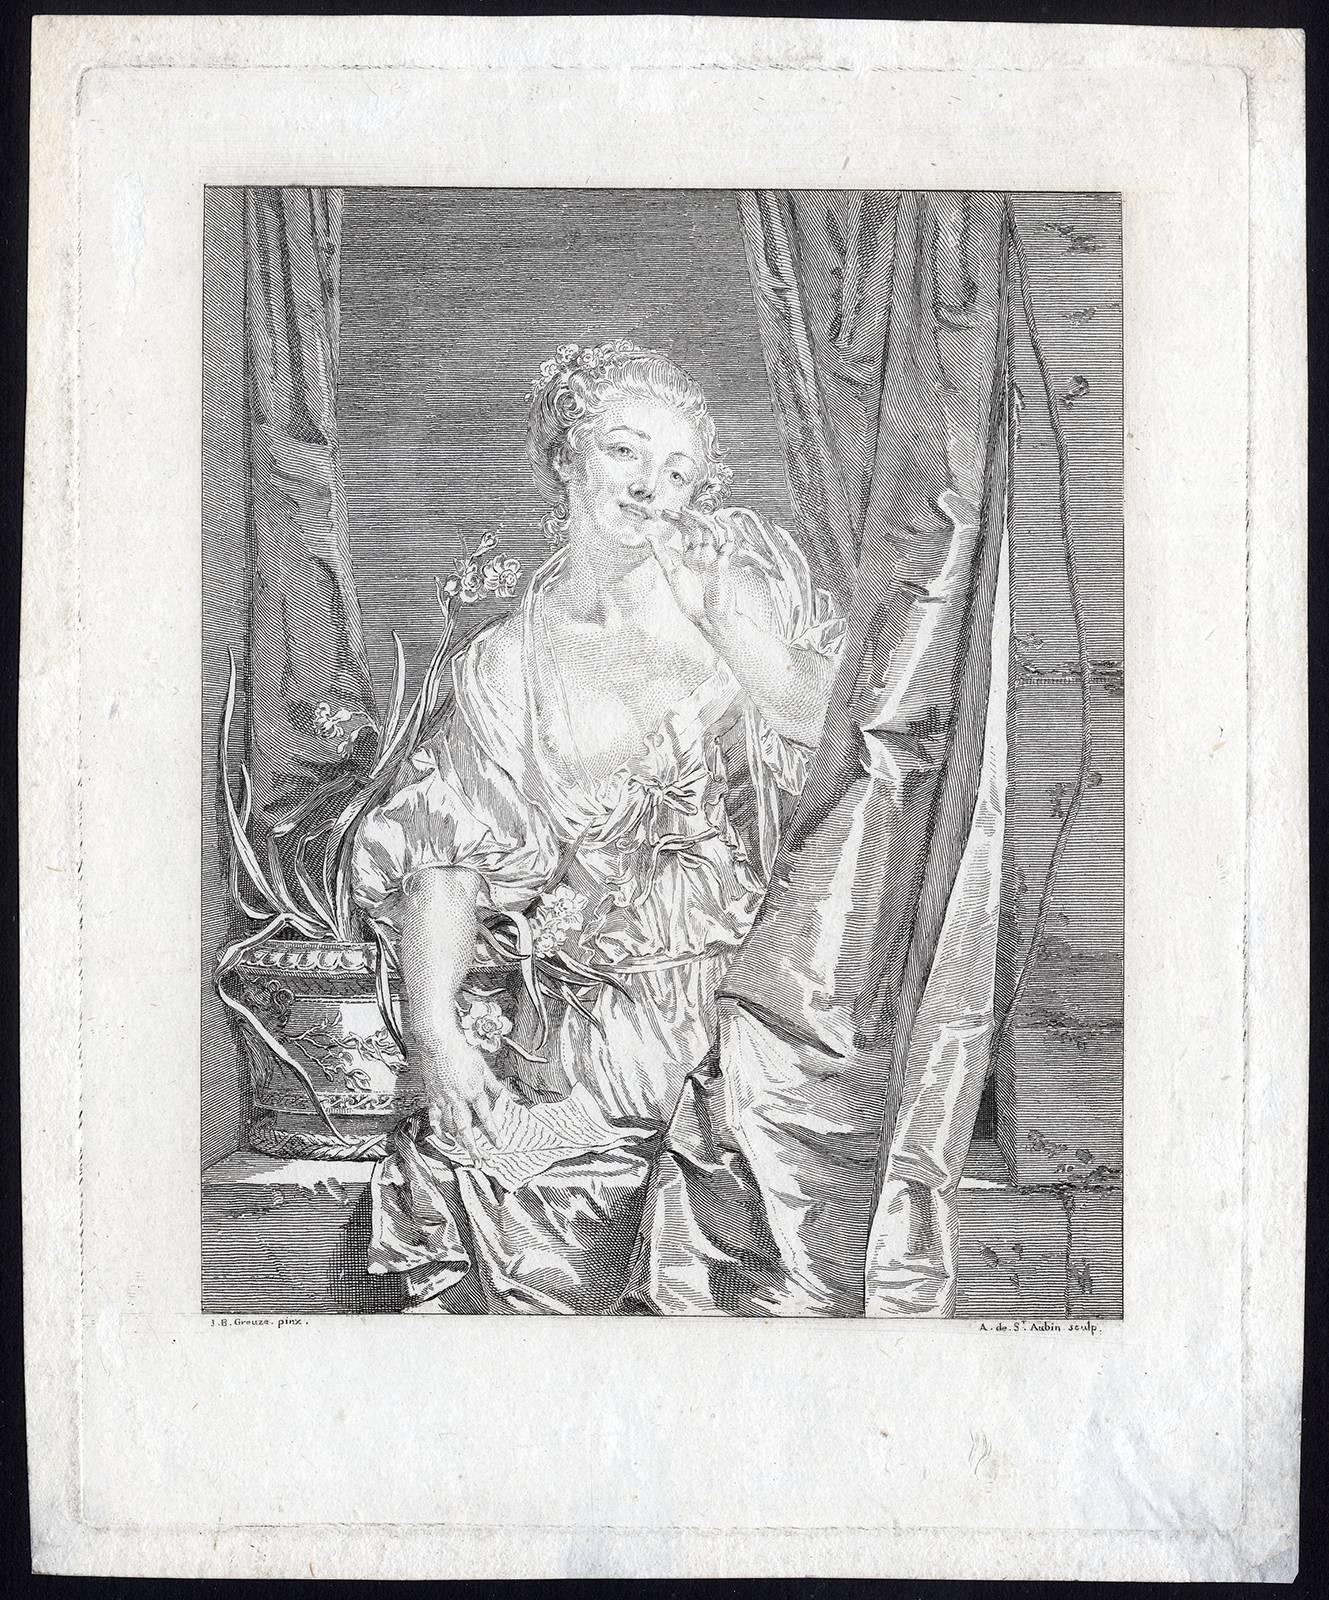 Augustin de Saint-Aubin Figurative Print - Le Baiser Envoyé - The blown kiss.